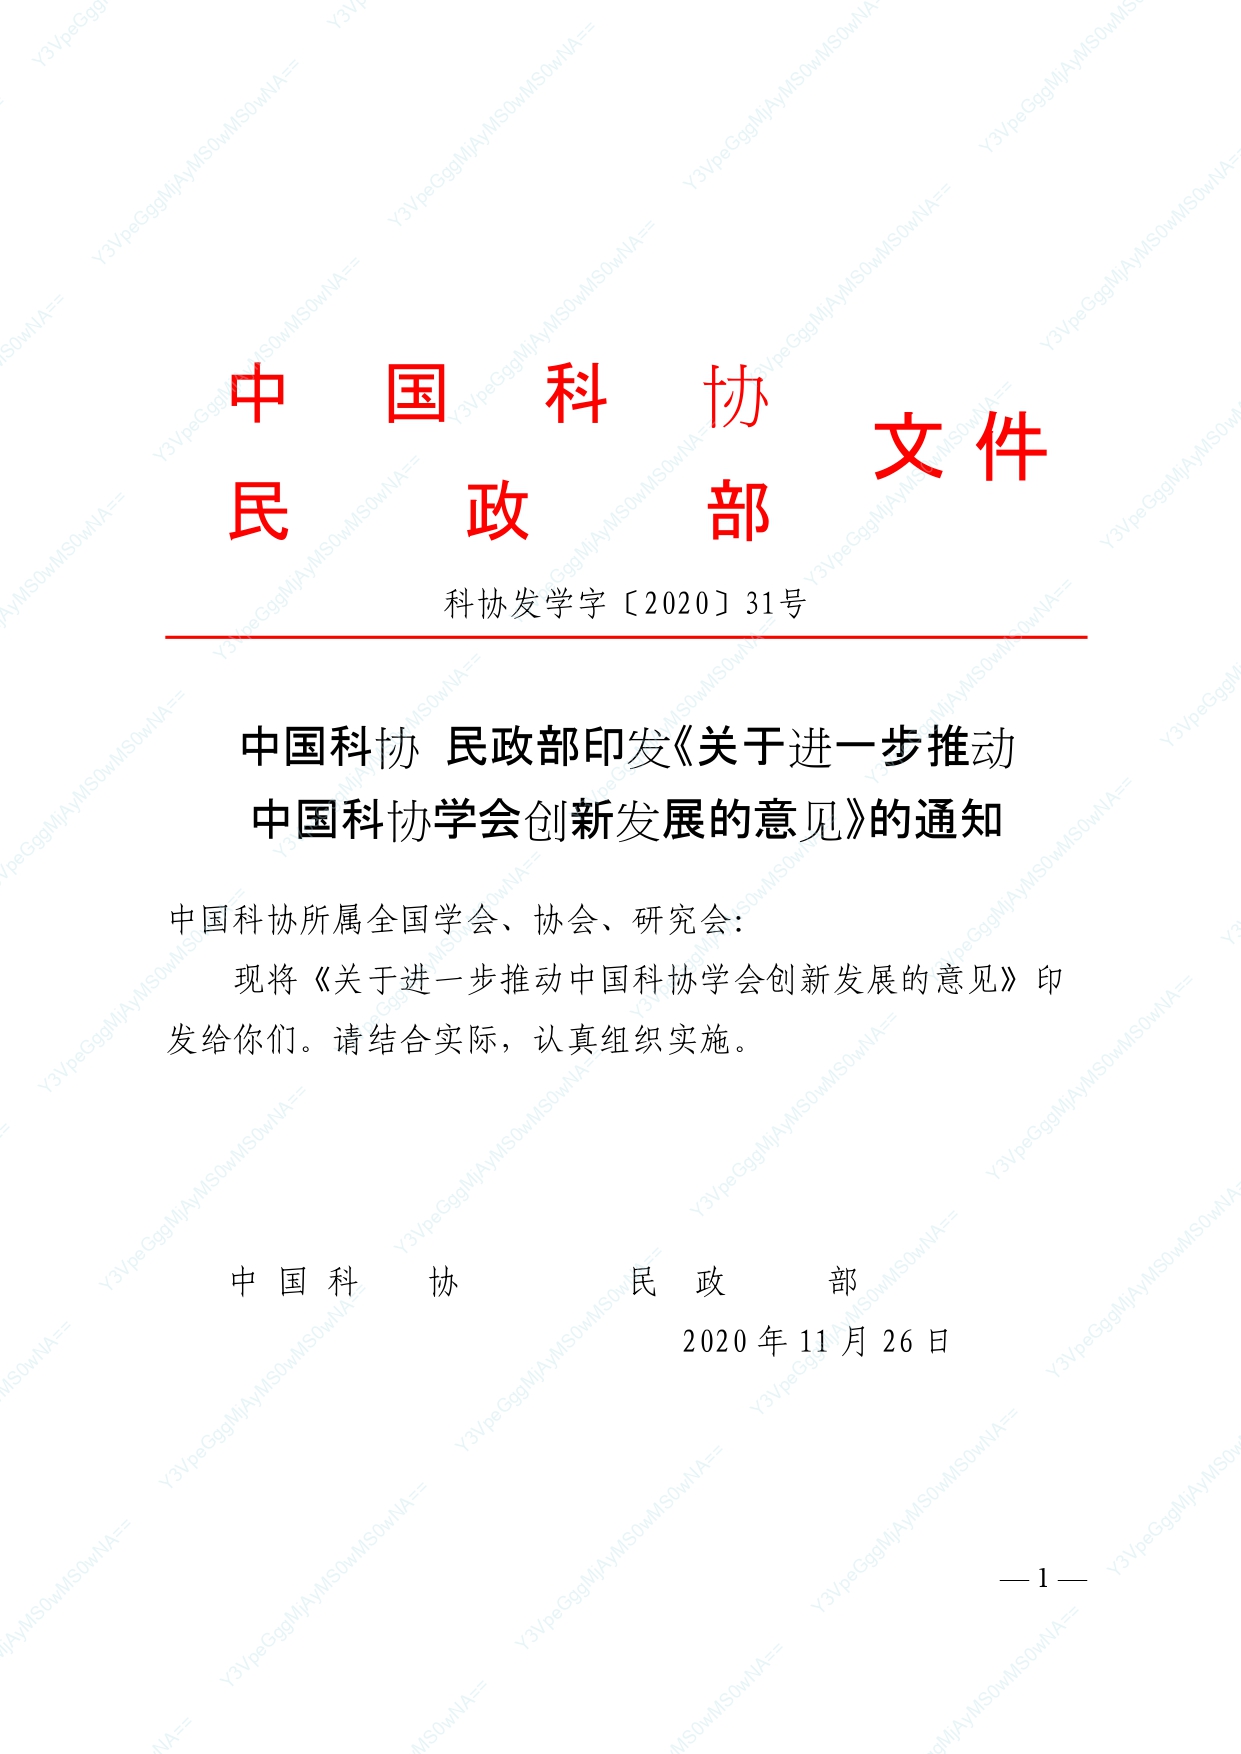 中国科协 民政部印发《关于进一步推动中国科协学会创新发展的意见》的通知_page-0001.jpg